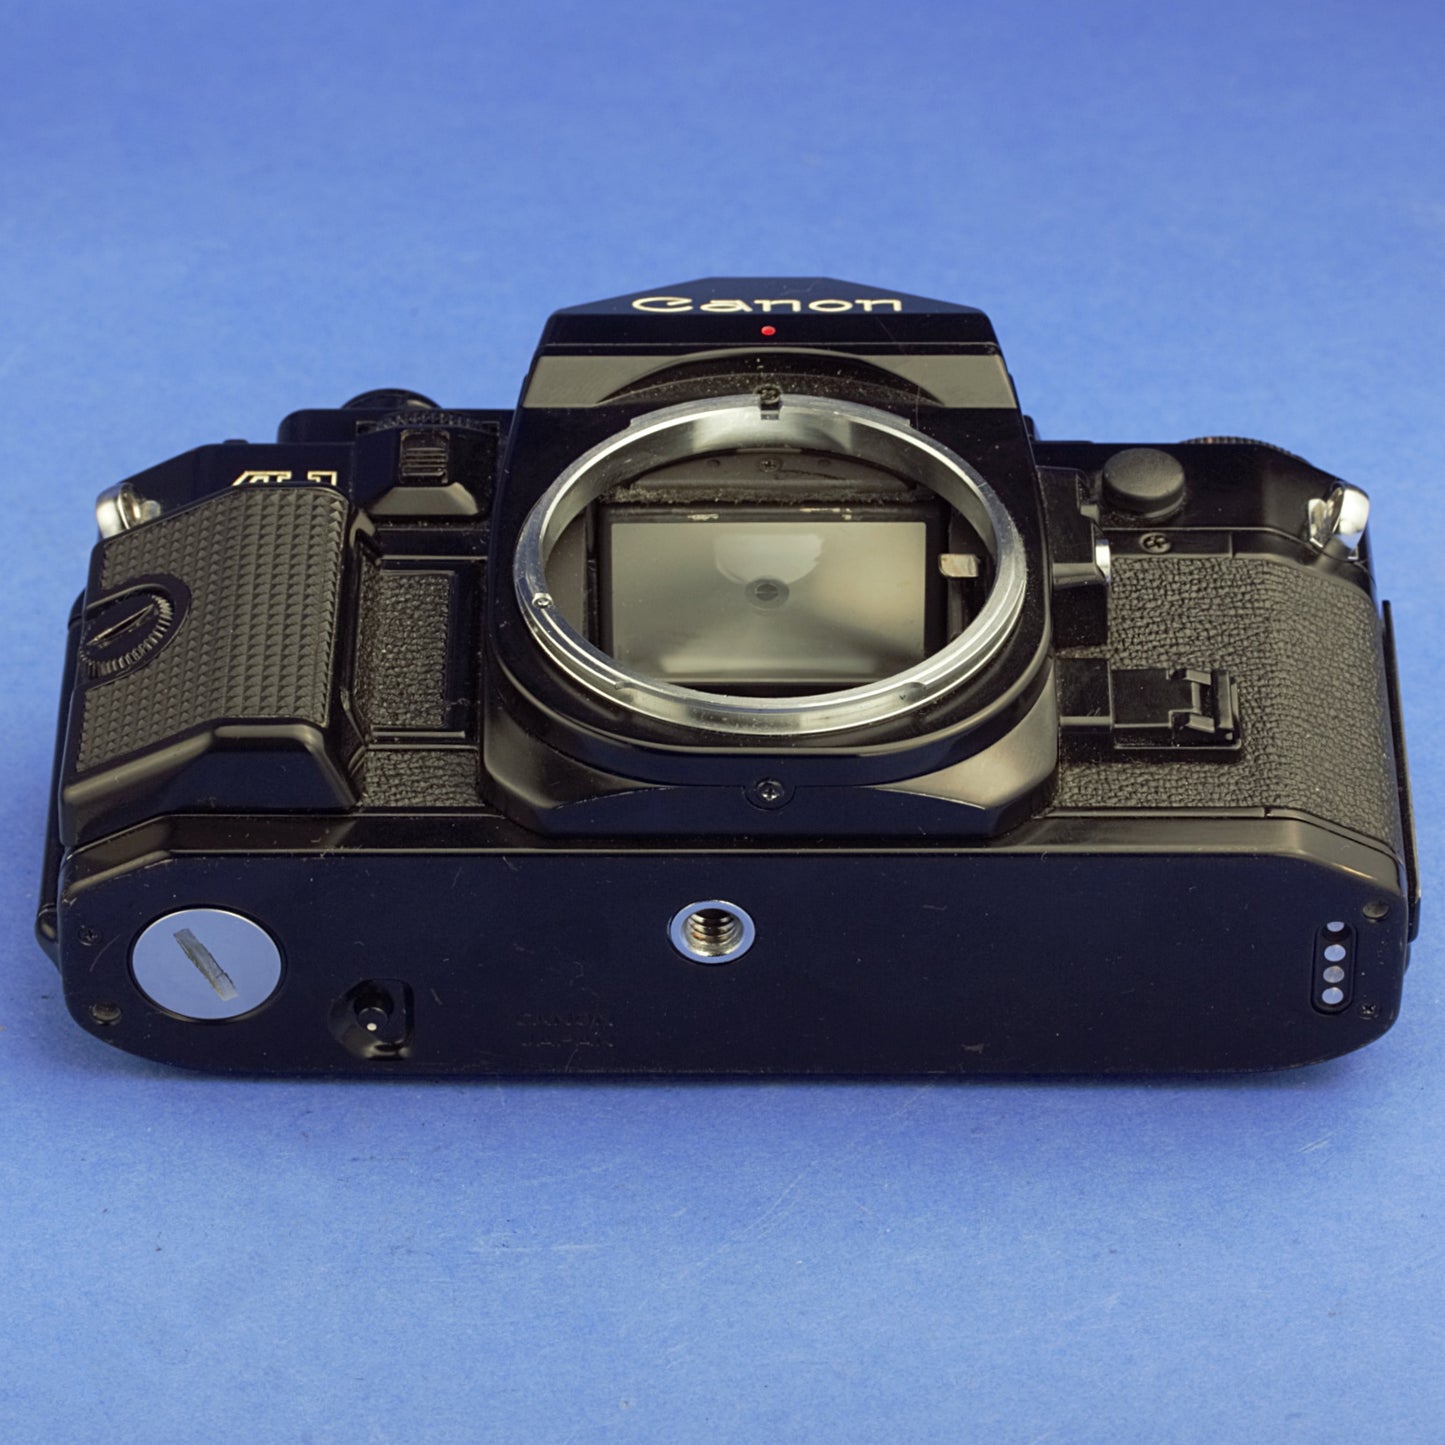 Canon A-1 Film Camera Body